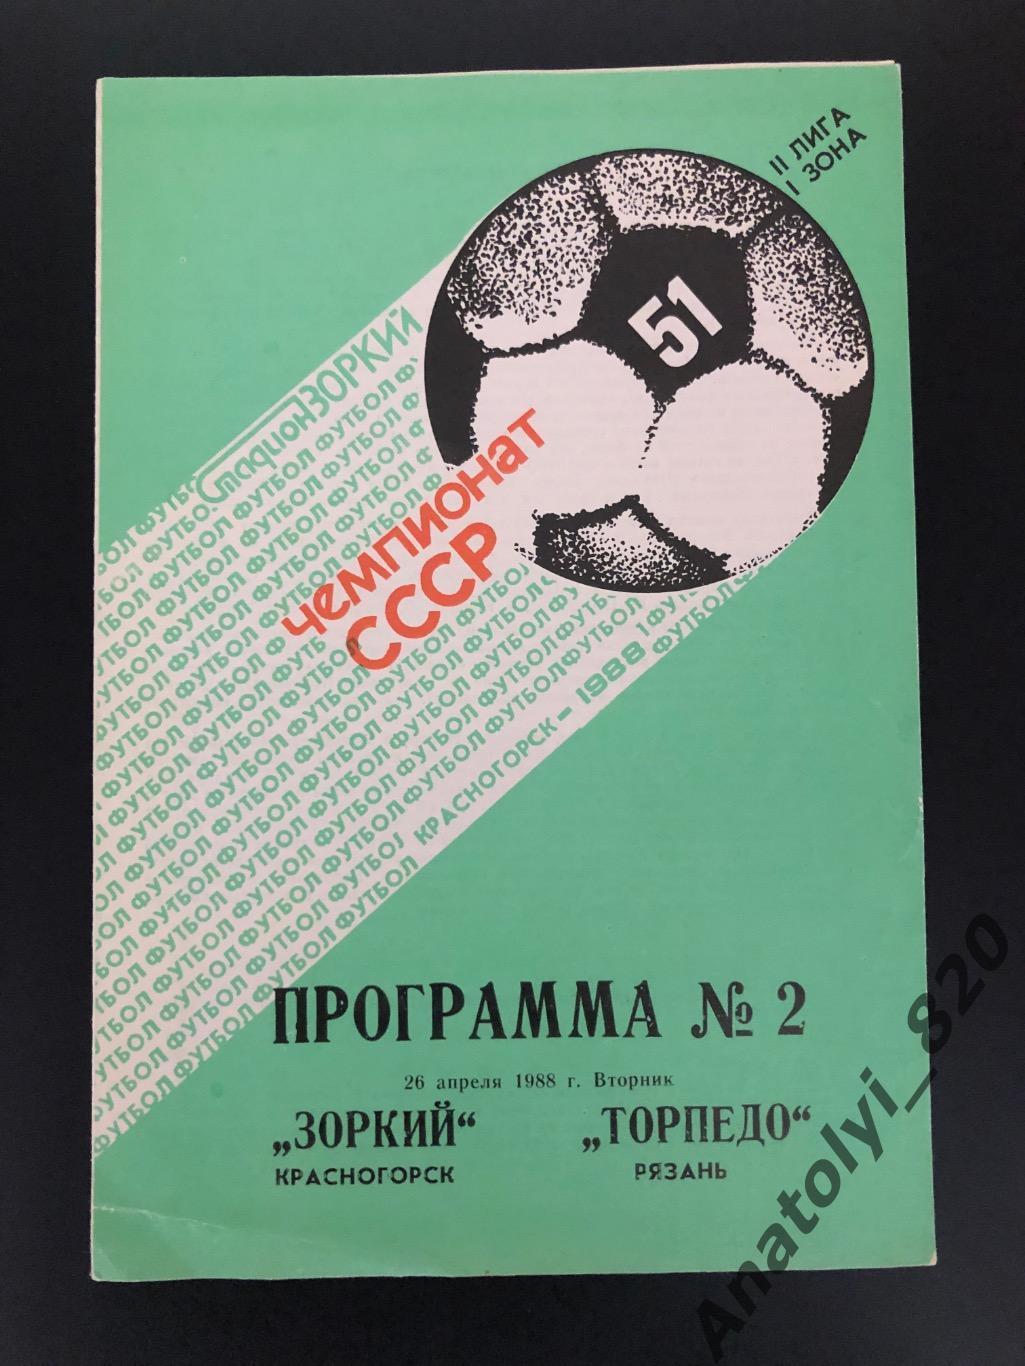 Зоркий Красногорск - Торпедо Рязань, 26.04.1988